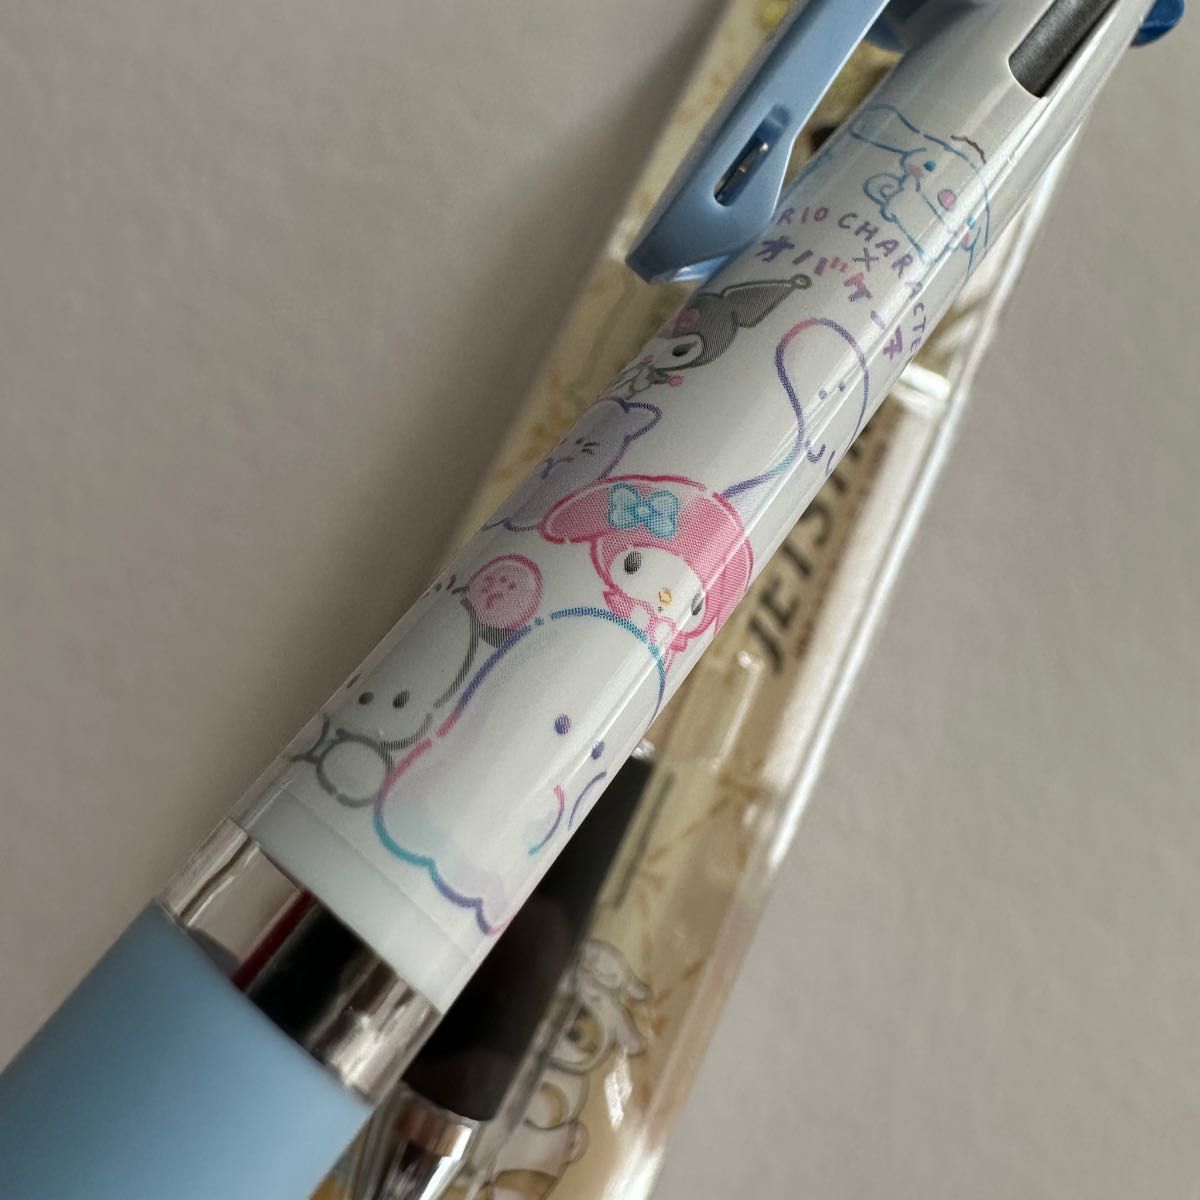 Sanrioキャラクター×モフサンドジェットストリーム4&1とオバケーヌジェットストリーム3色ボールペン